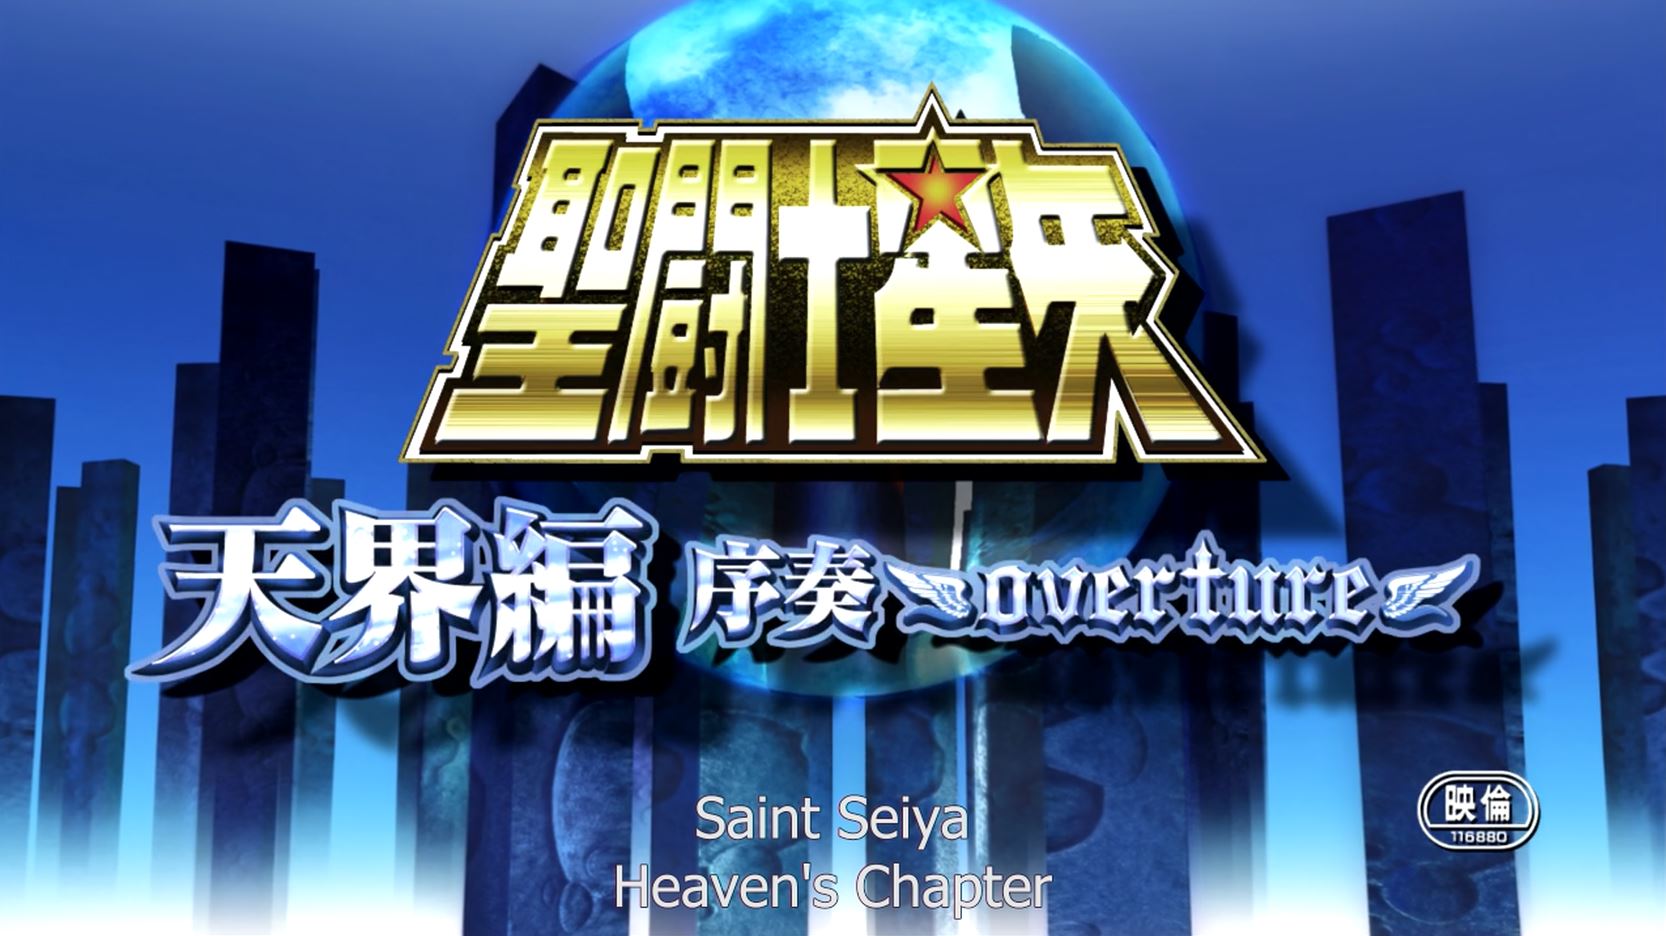 Saint seiya: tenkai-hen josou - overture - Saint seiya: the heaven chapter - overture